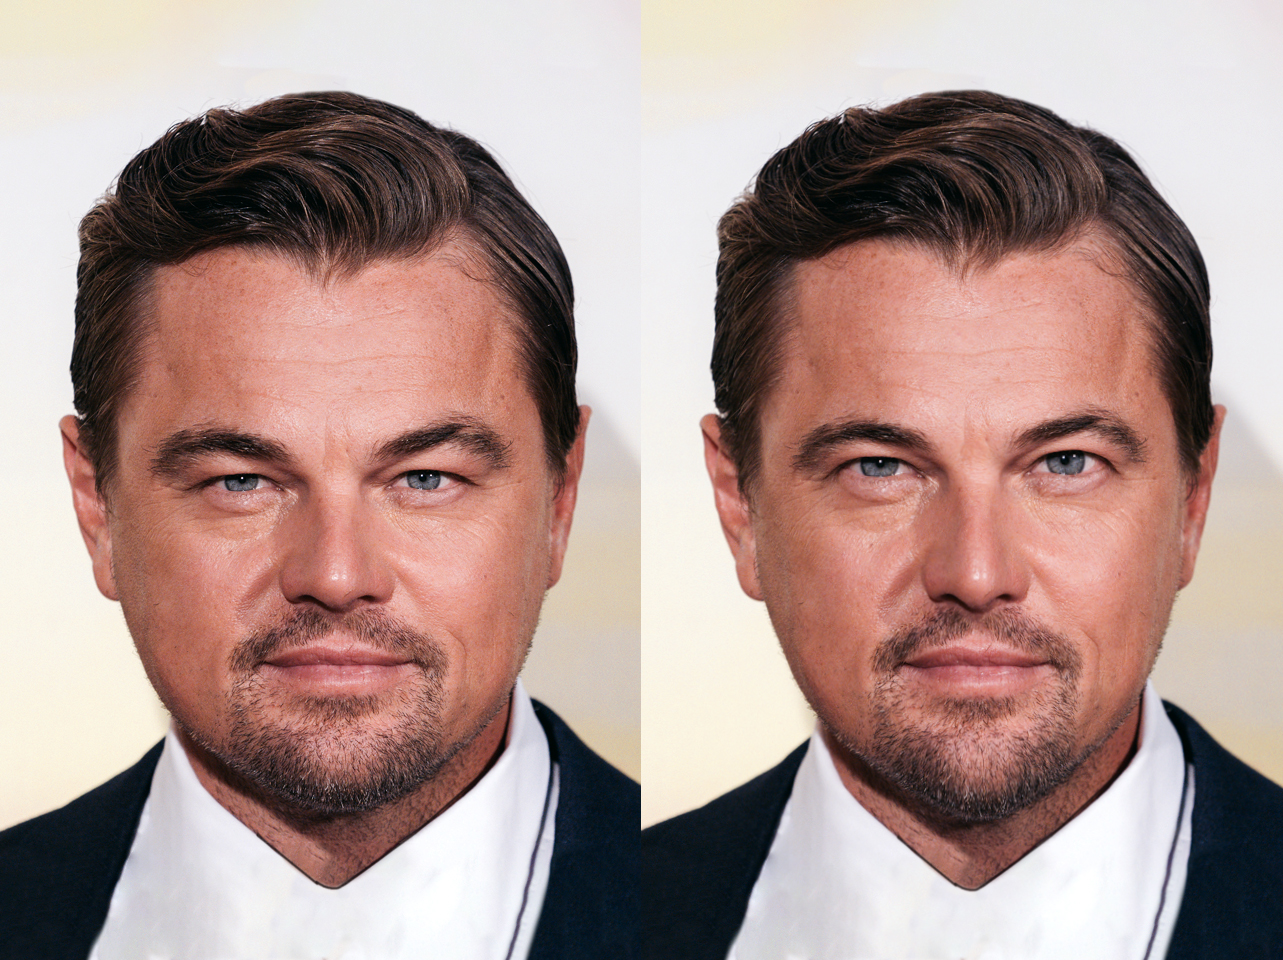 Der echte Leonardo DiCaprio vs. sein Ideal-Ich | Quelle: Getty Images